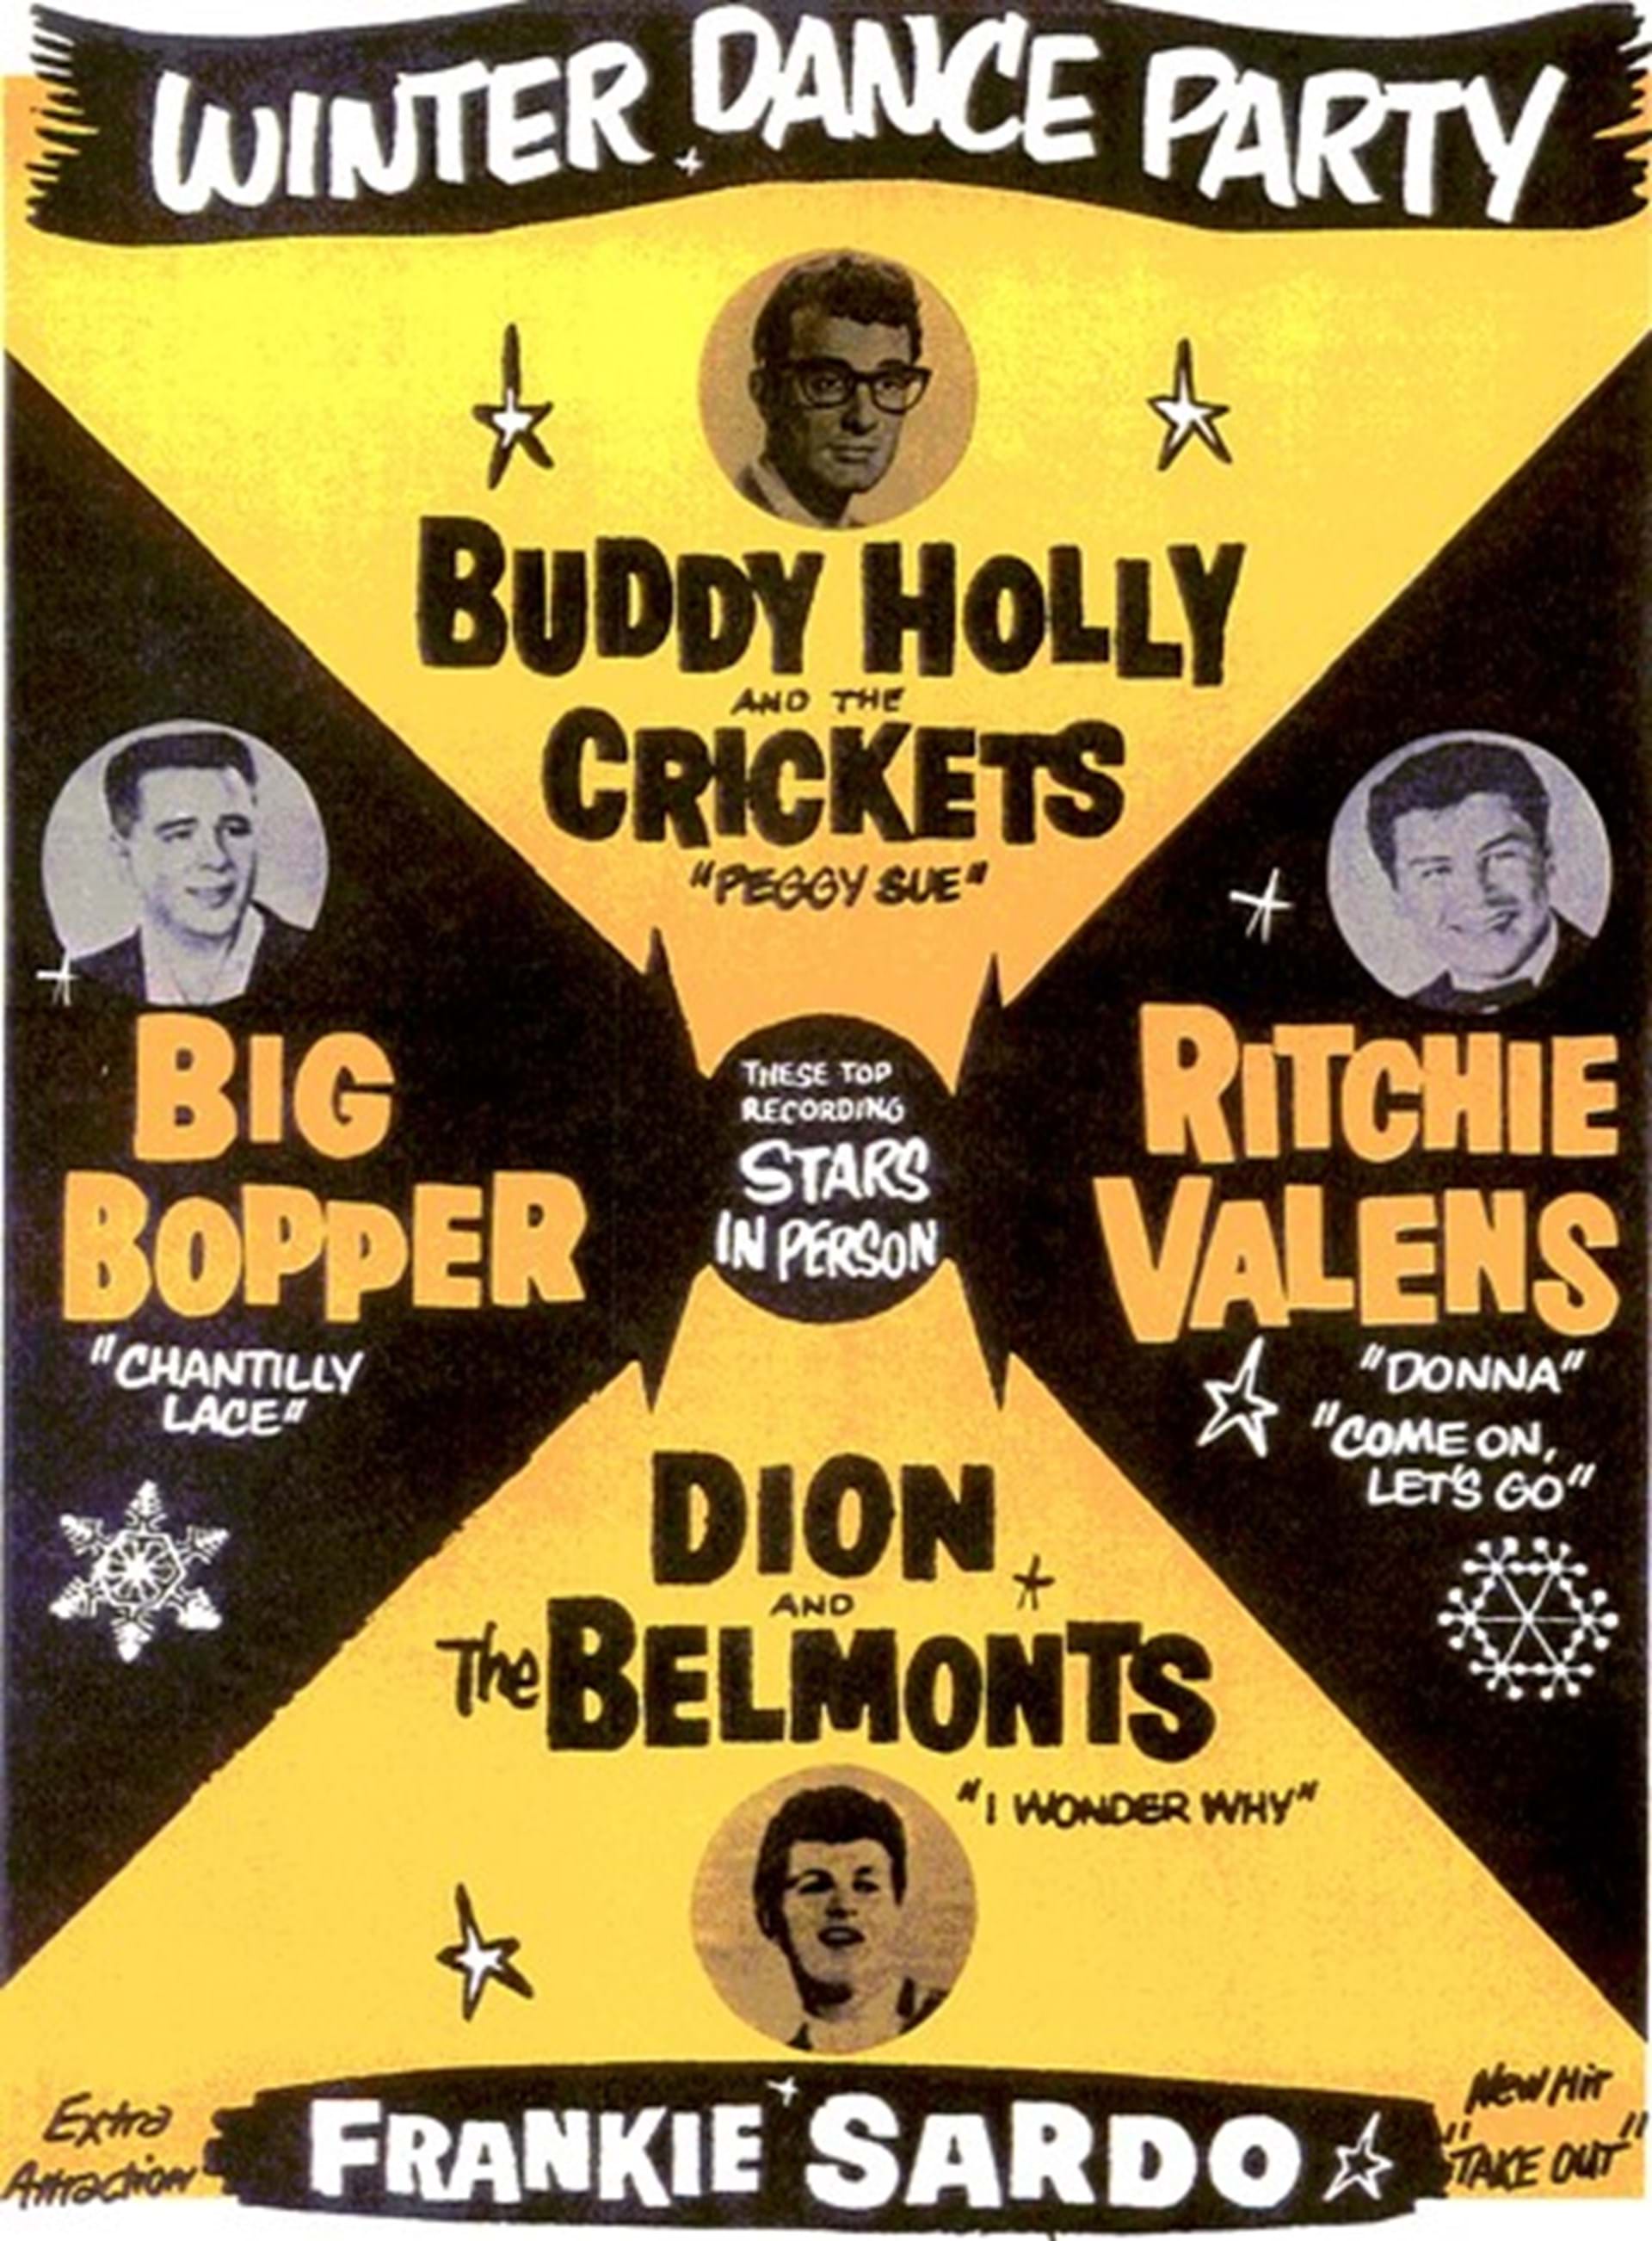 Buddy Holly, Ritchie Valens & Big Bopper Crash Site Memorial